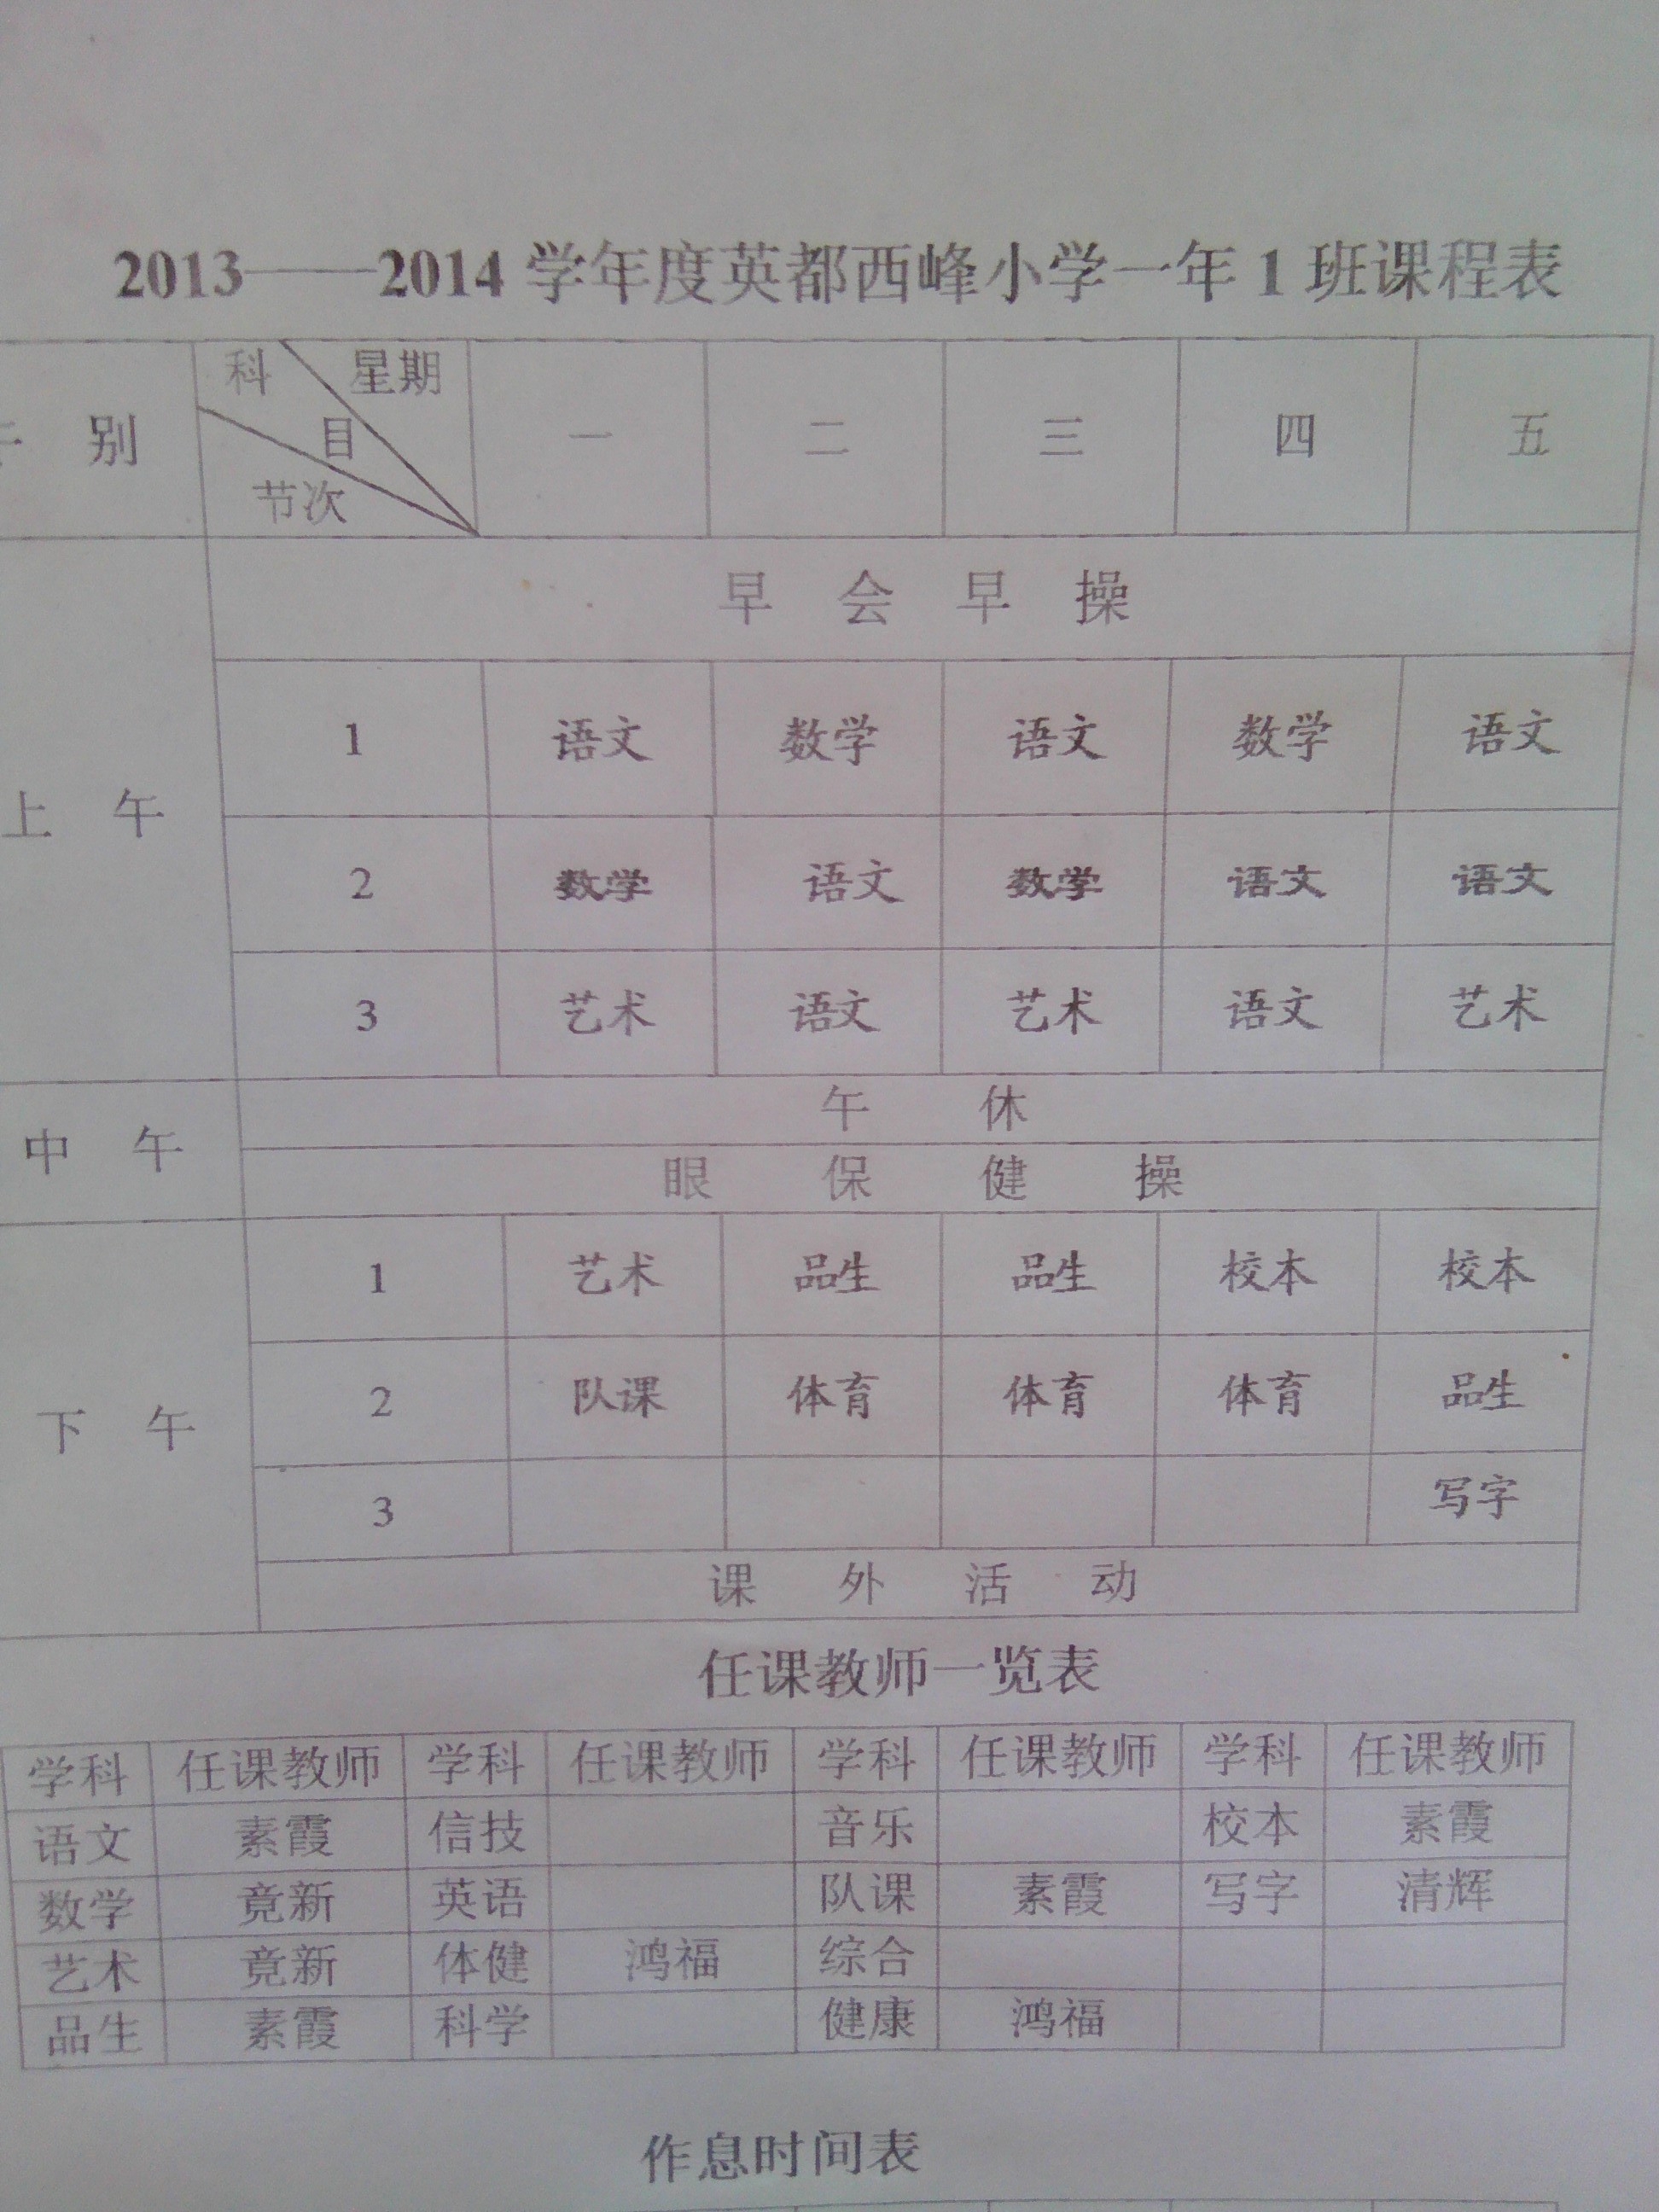 2013年秋南安西峰小学一年级班级功课表 - 动